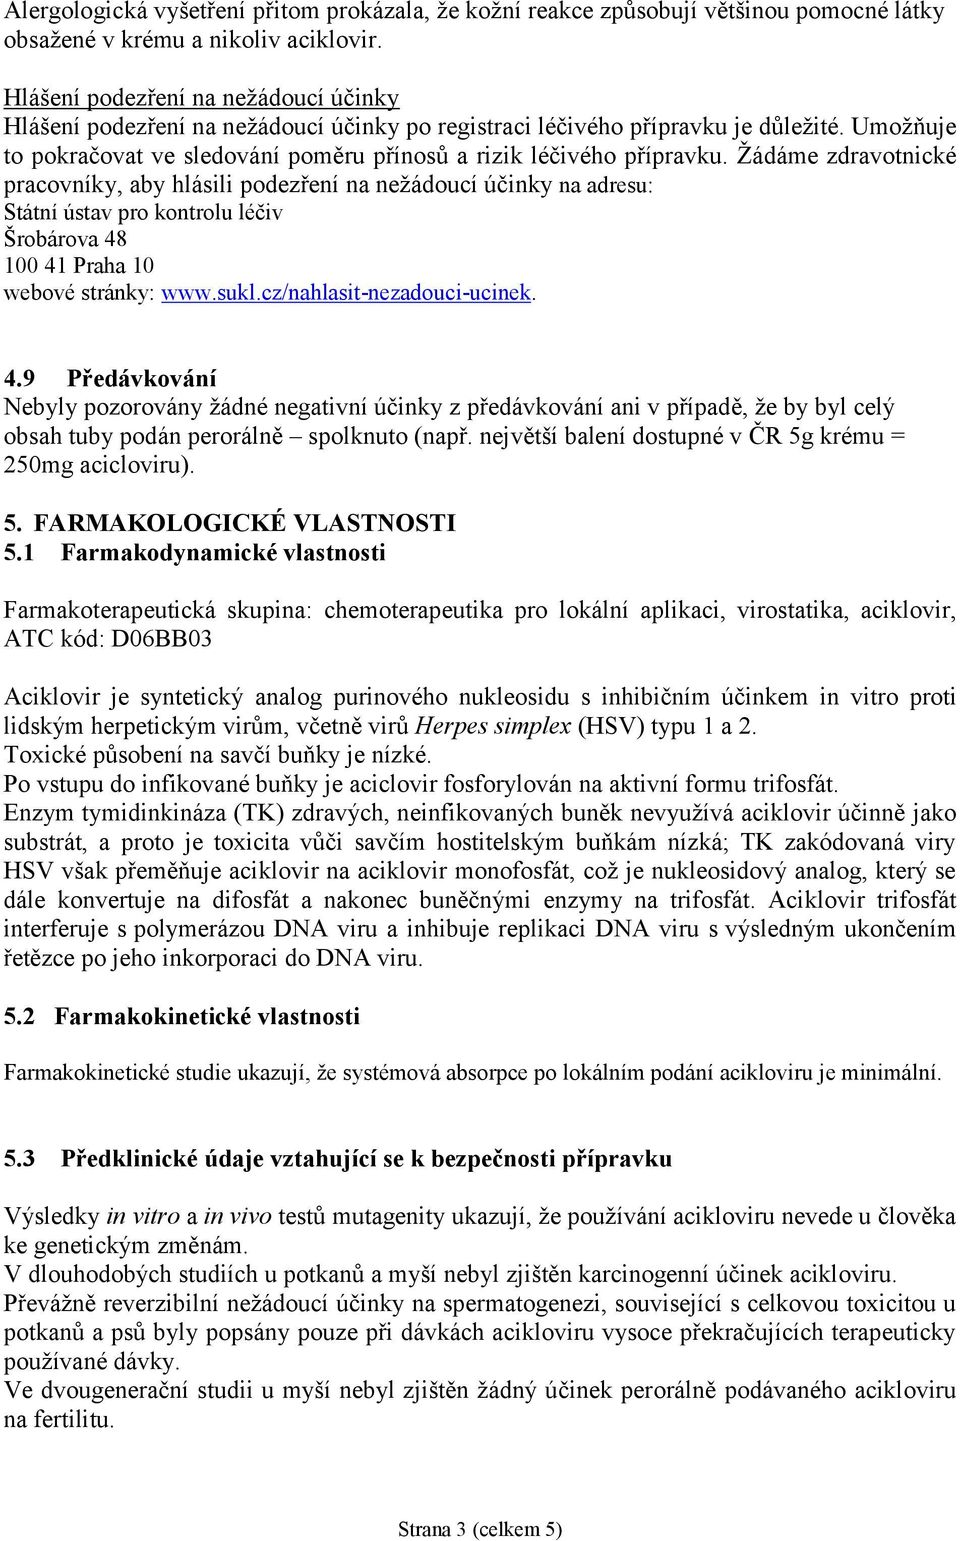 Žádáme zdravotnické pracovníky, aby hlásili podezření na nežádoucí účinky na adresu: Státní ústav pro kontrolu léčiv Šrobárova 48 100 41 Praha 10 webové stránky: www.sukl.cz/nahlasit-nezadouci-ucinek.